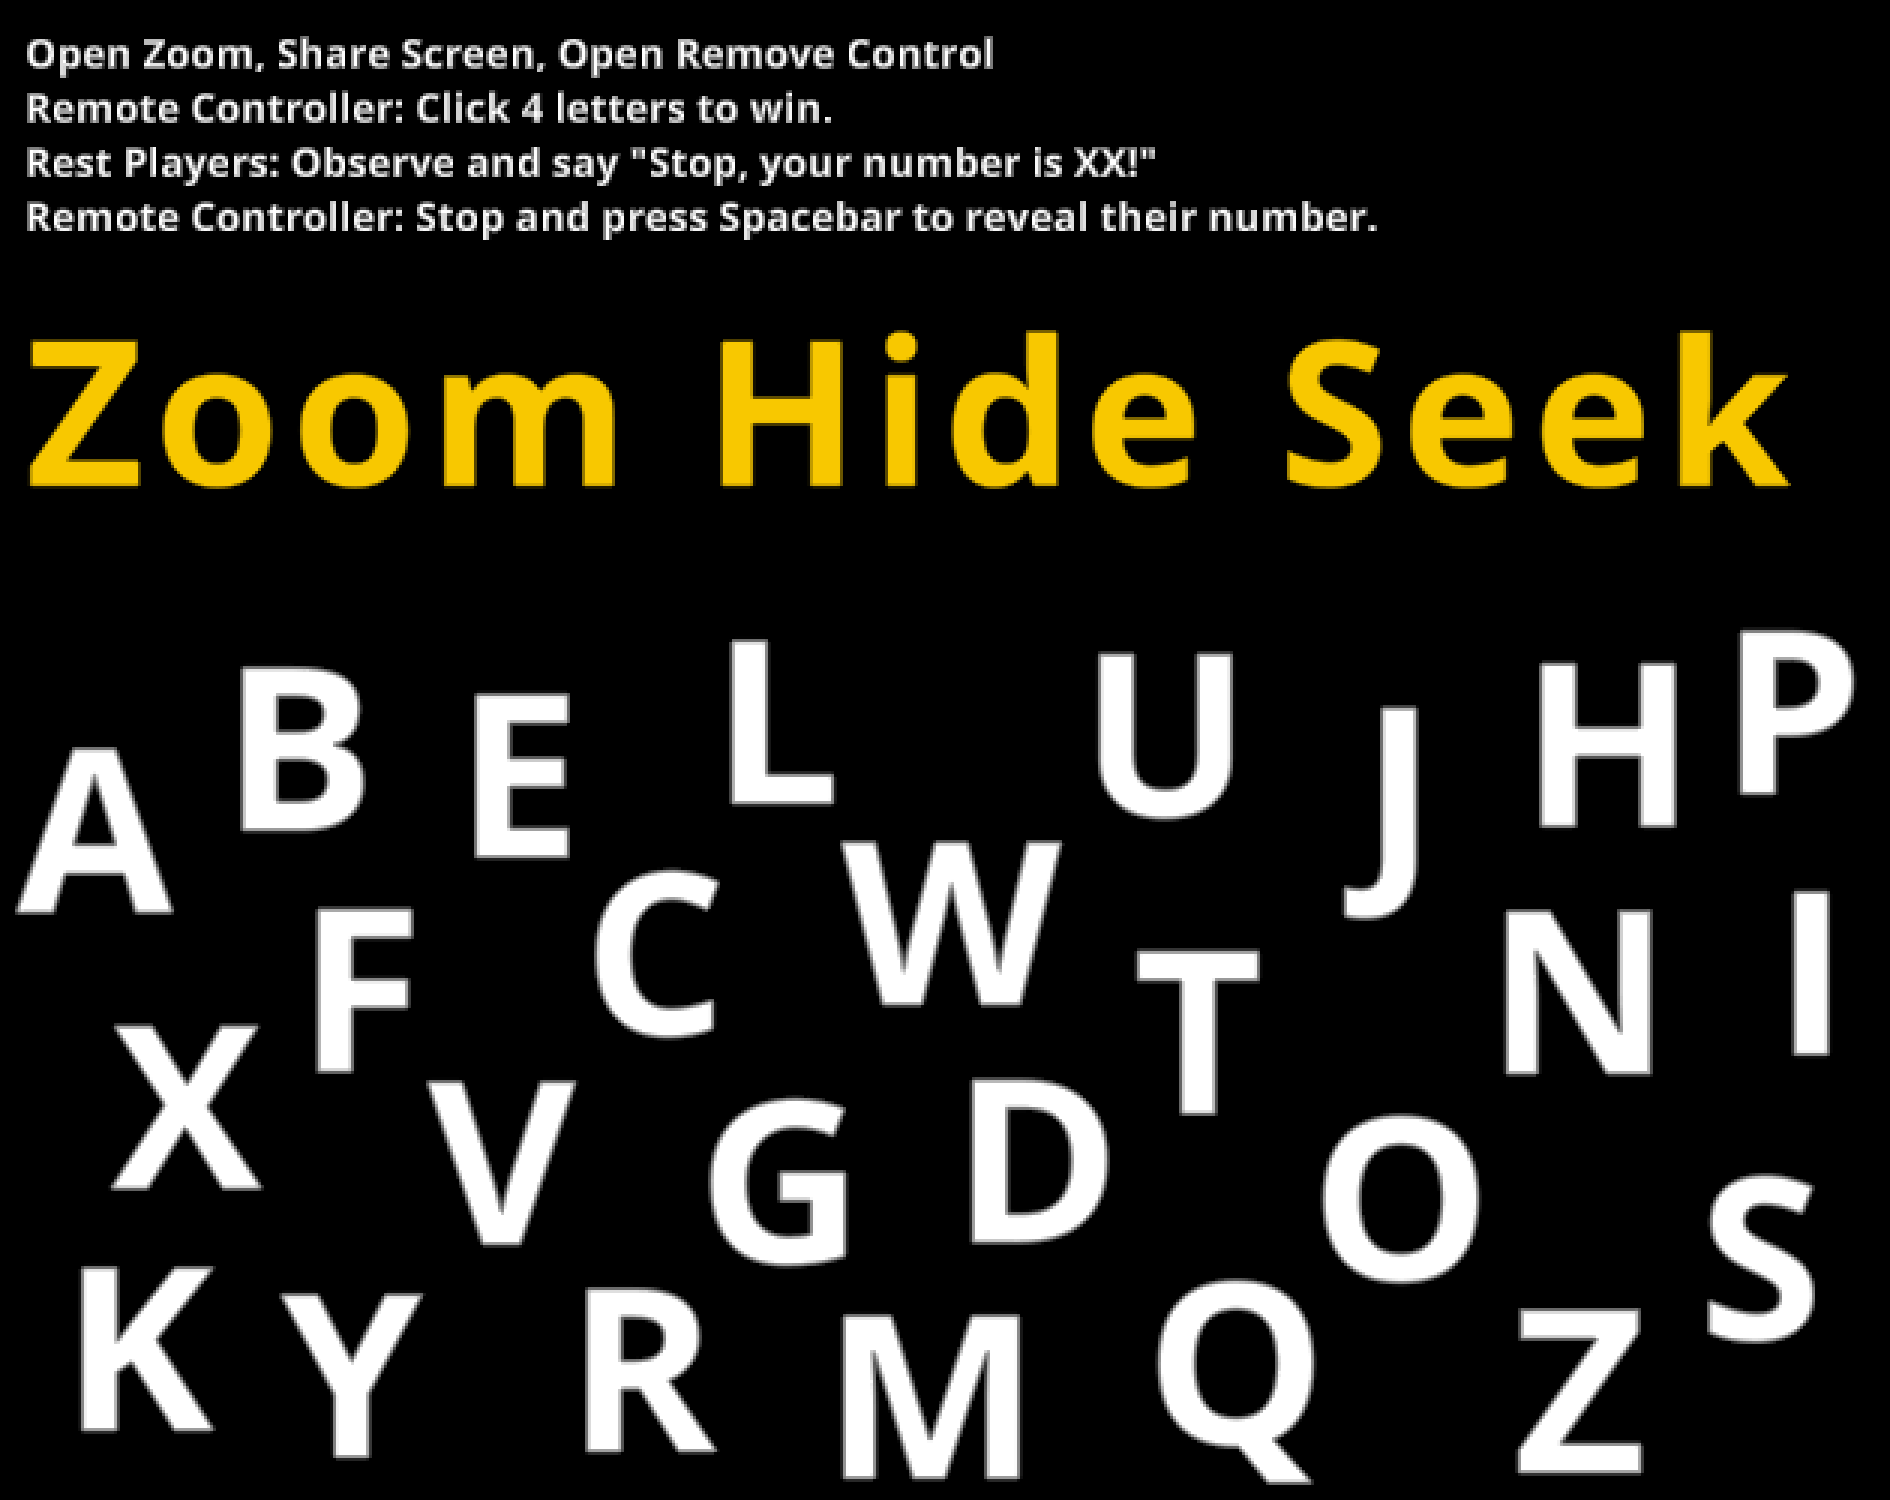 Zoom hide seek mac os x